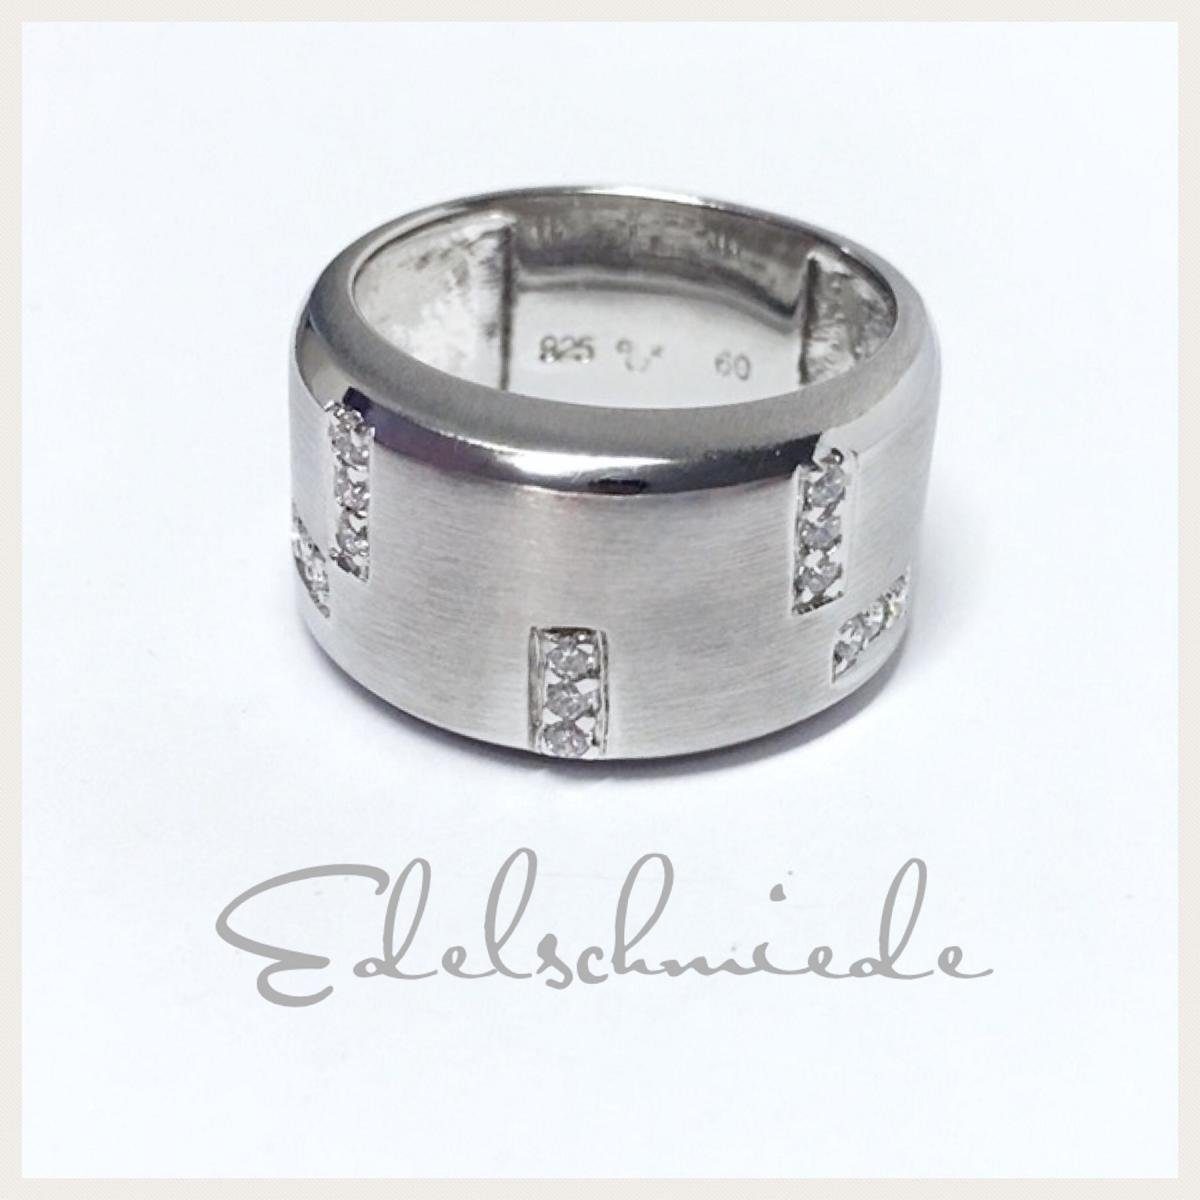 Edelschmiede925 Silberring breiter, matter Ring 925 Silber rhod mit  Zirkonia #59